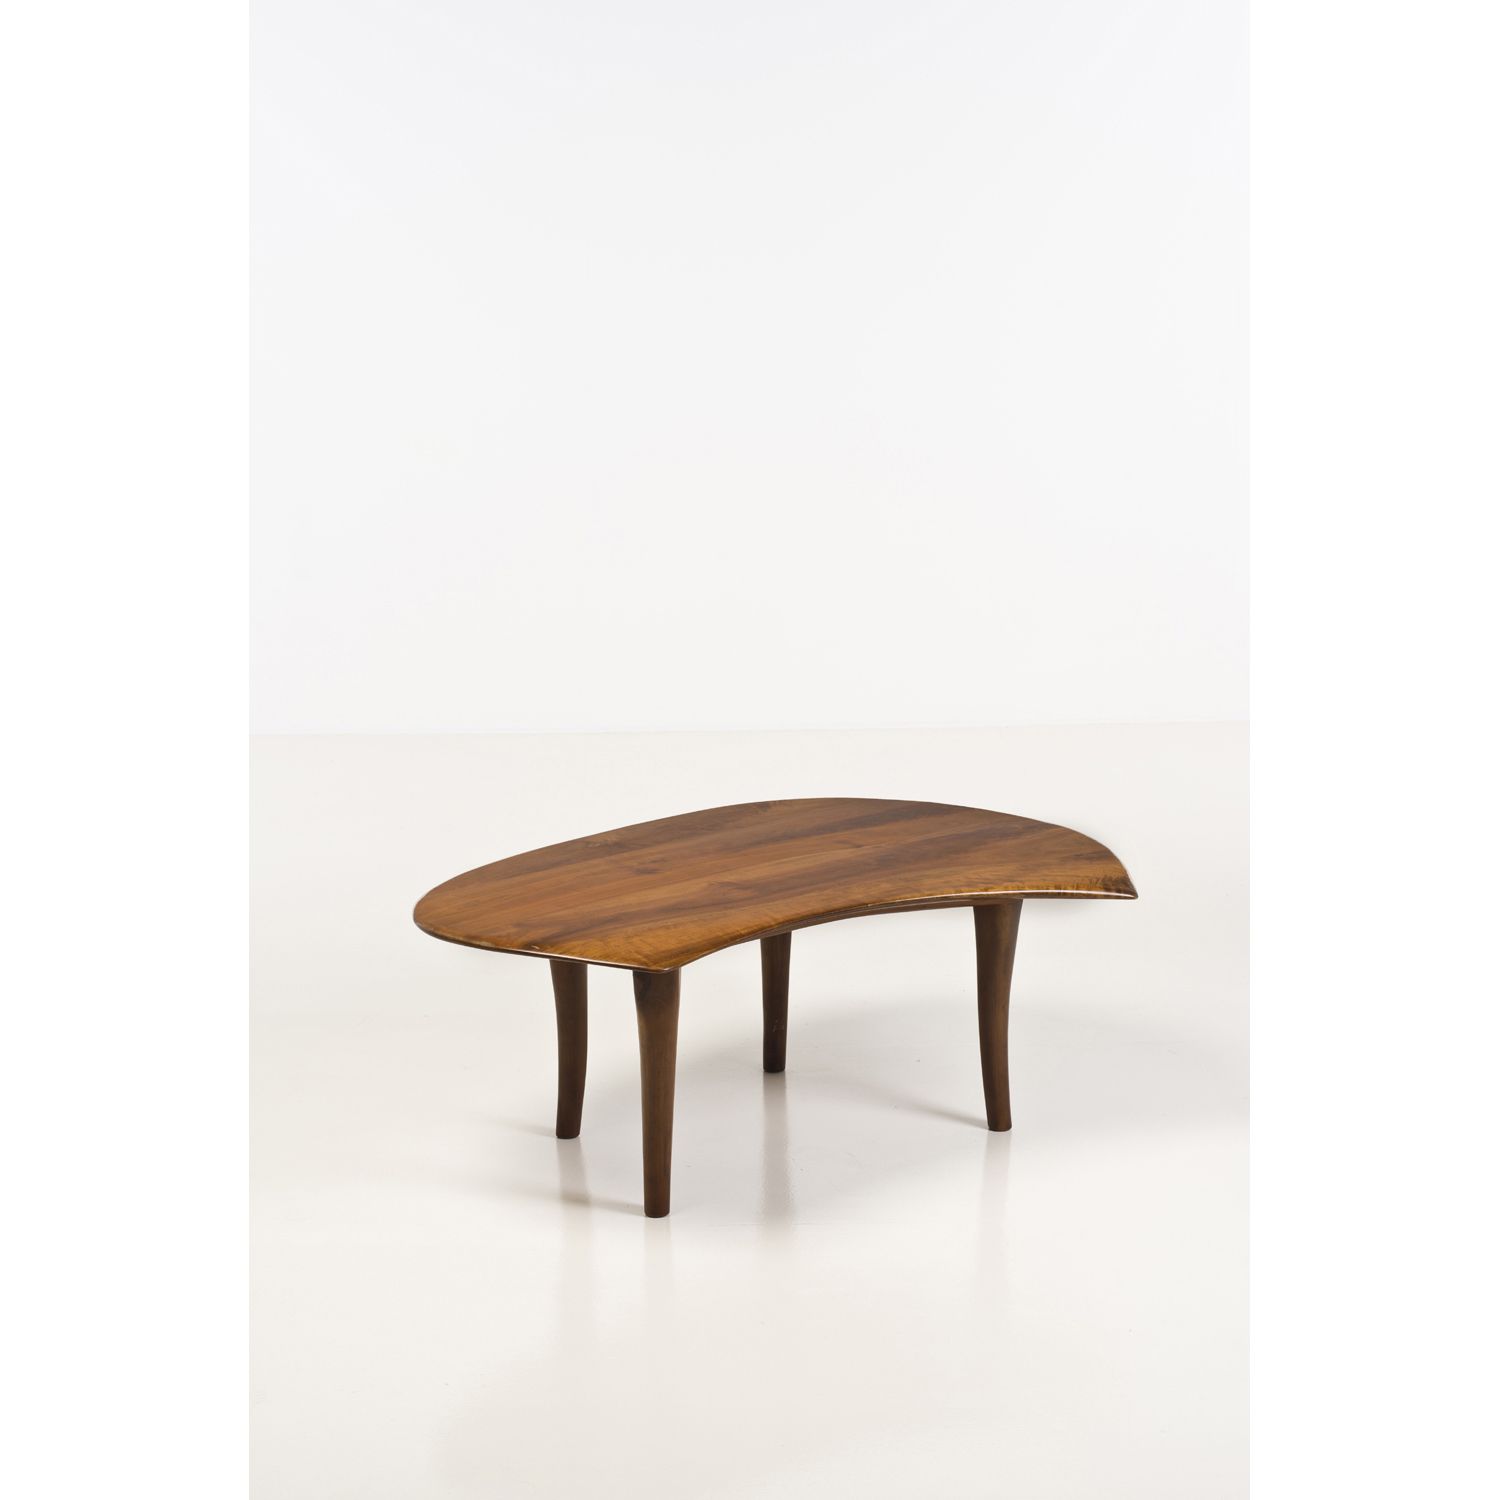 Null 沃顿-哈里斯-埃舍利克(1887-1970)

咖啡桌 - 独特的作品

樱桃木

签名 "W.E"，日期 "1970"。

创建于1970年的模型
&hellip;